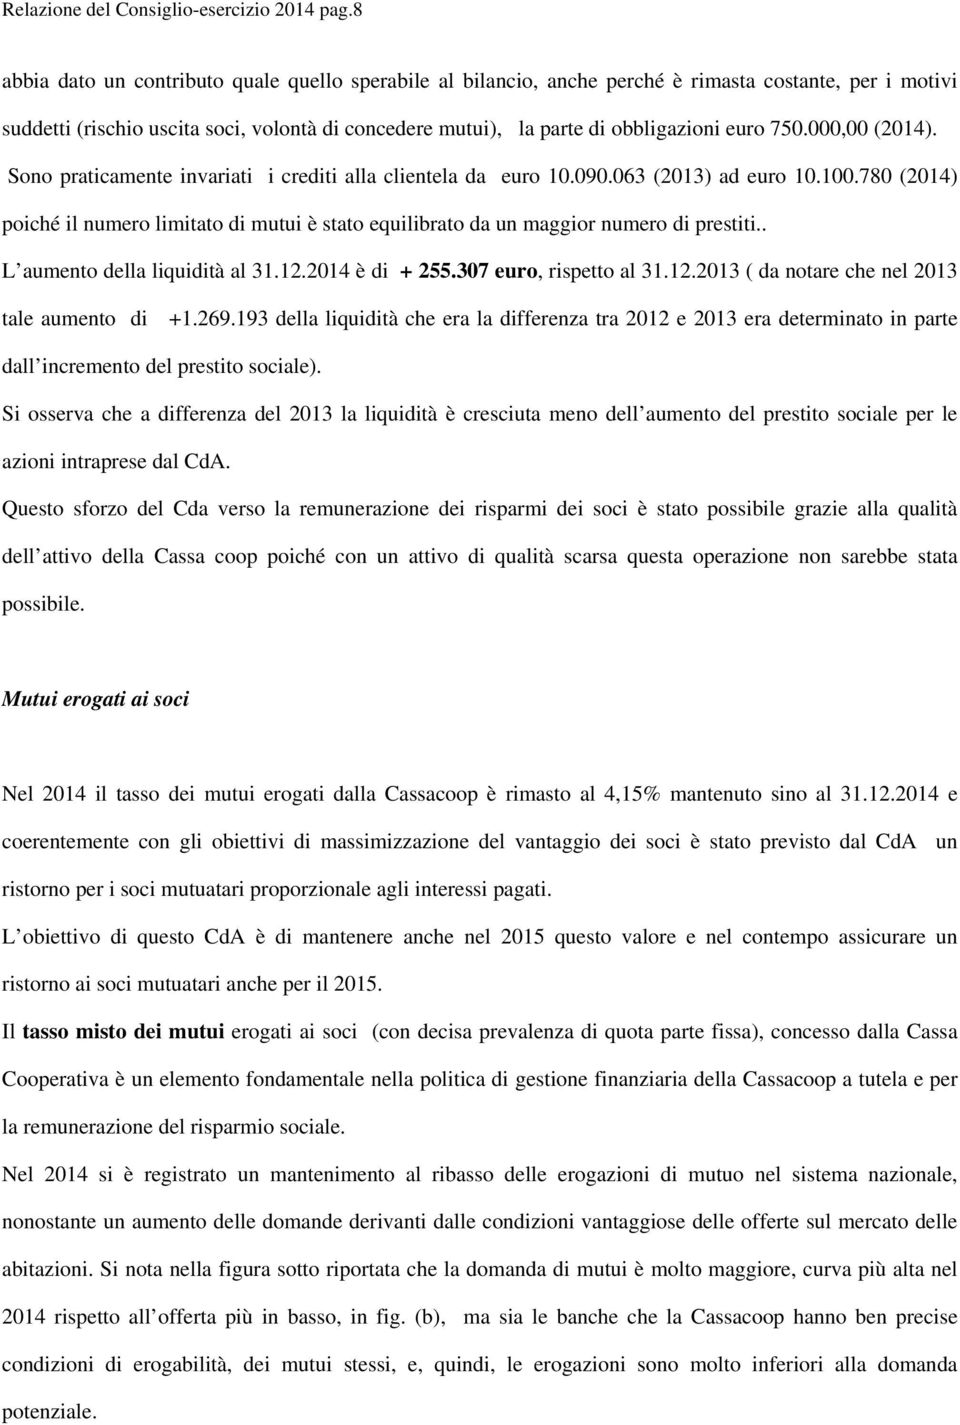 750.000,00 (2014). Sono praticamente invariati i crediti alla clientela da euro 10.090.063 (2013) ad euro 10.100.